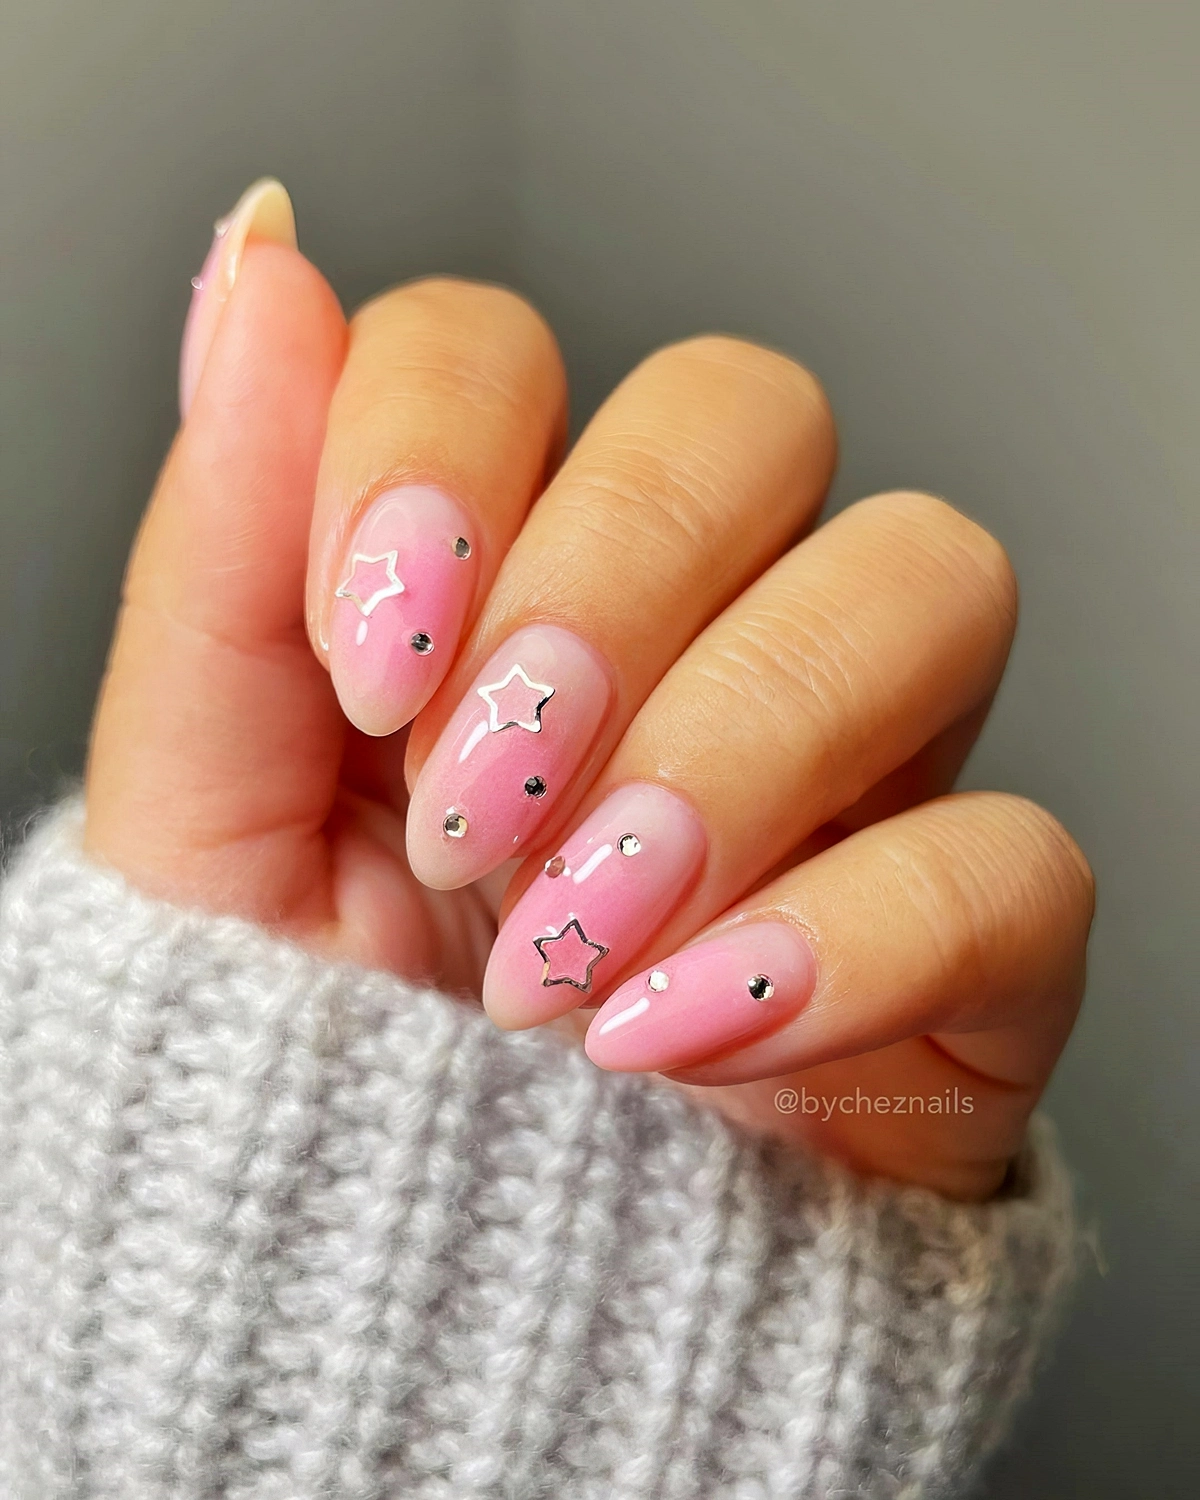 rose nails mit silbernen dekorationen babyboomer hellrosa naegel 